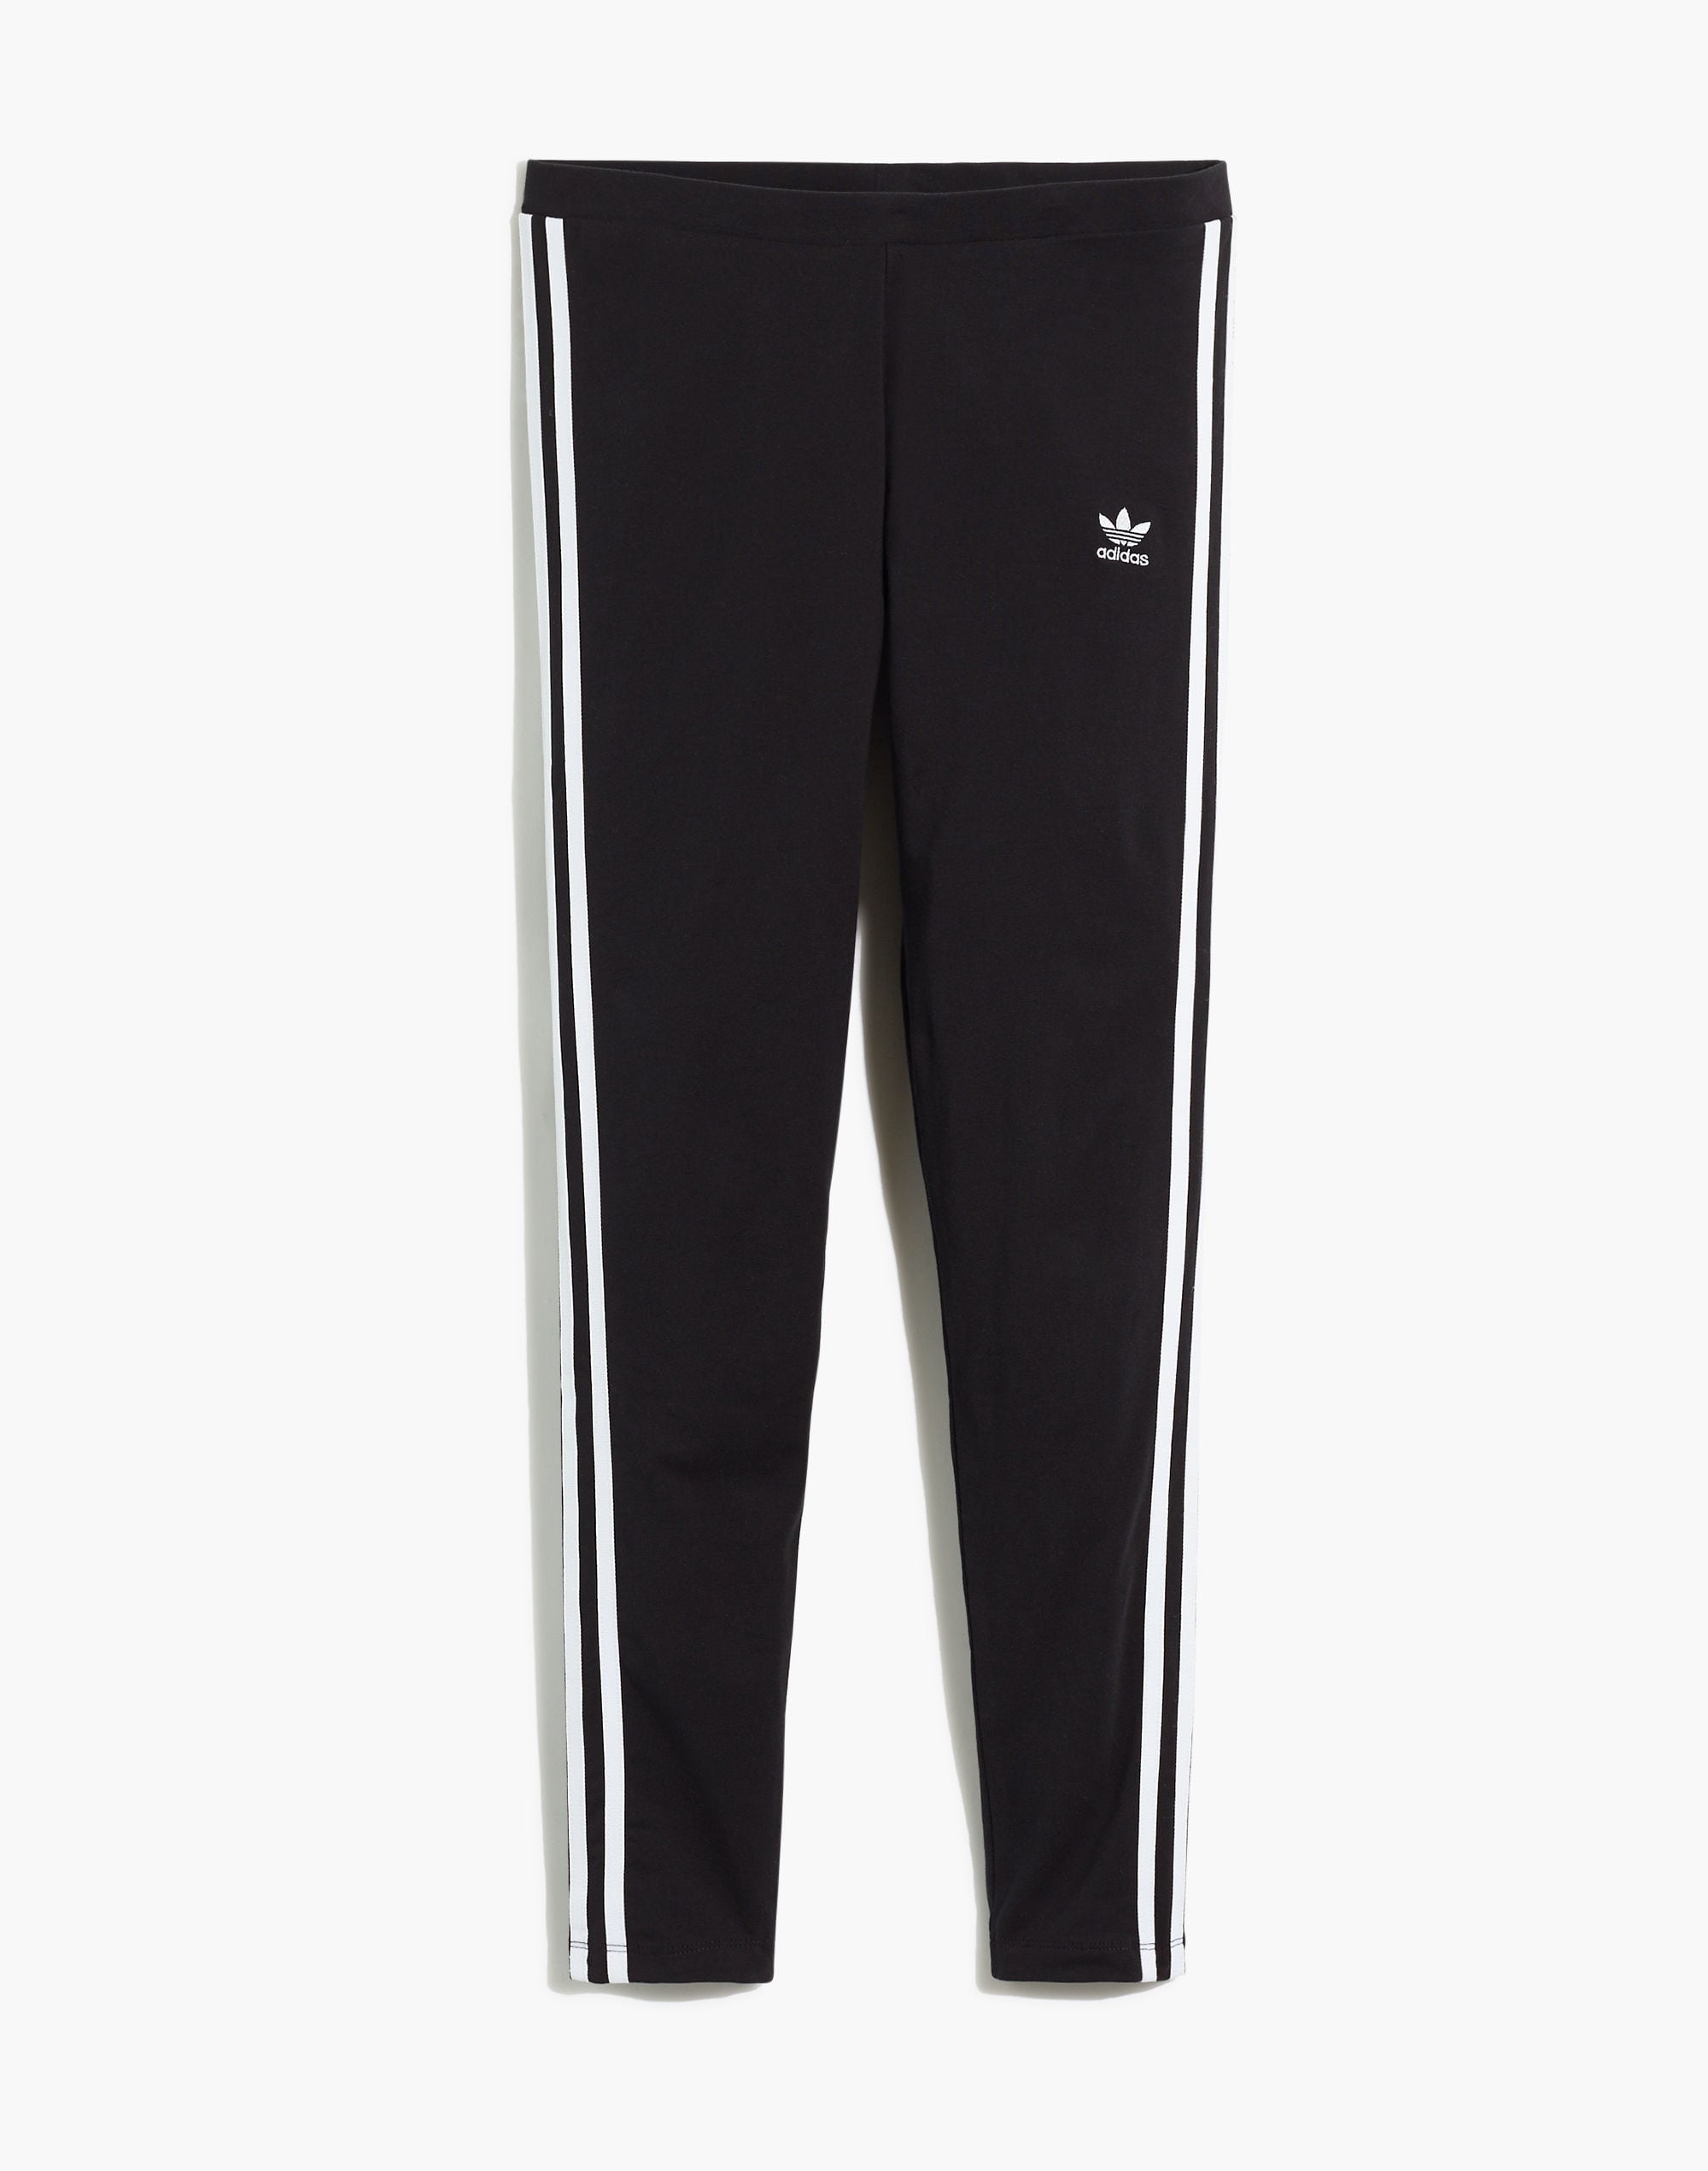 Originals 3-Stripes Adidas® Leggings